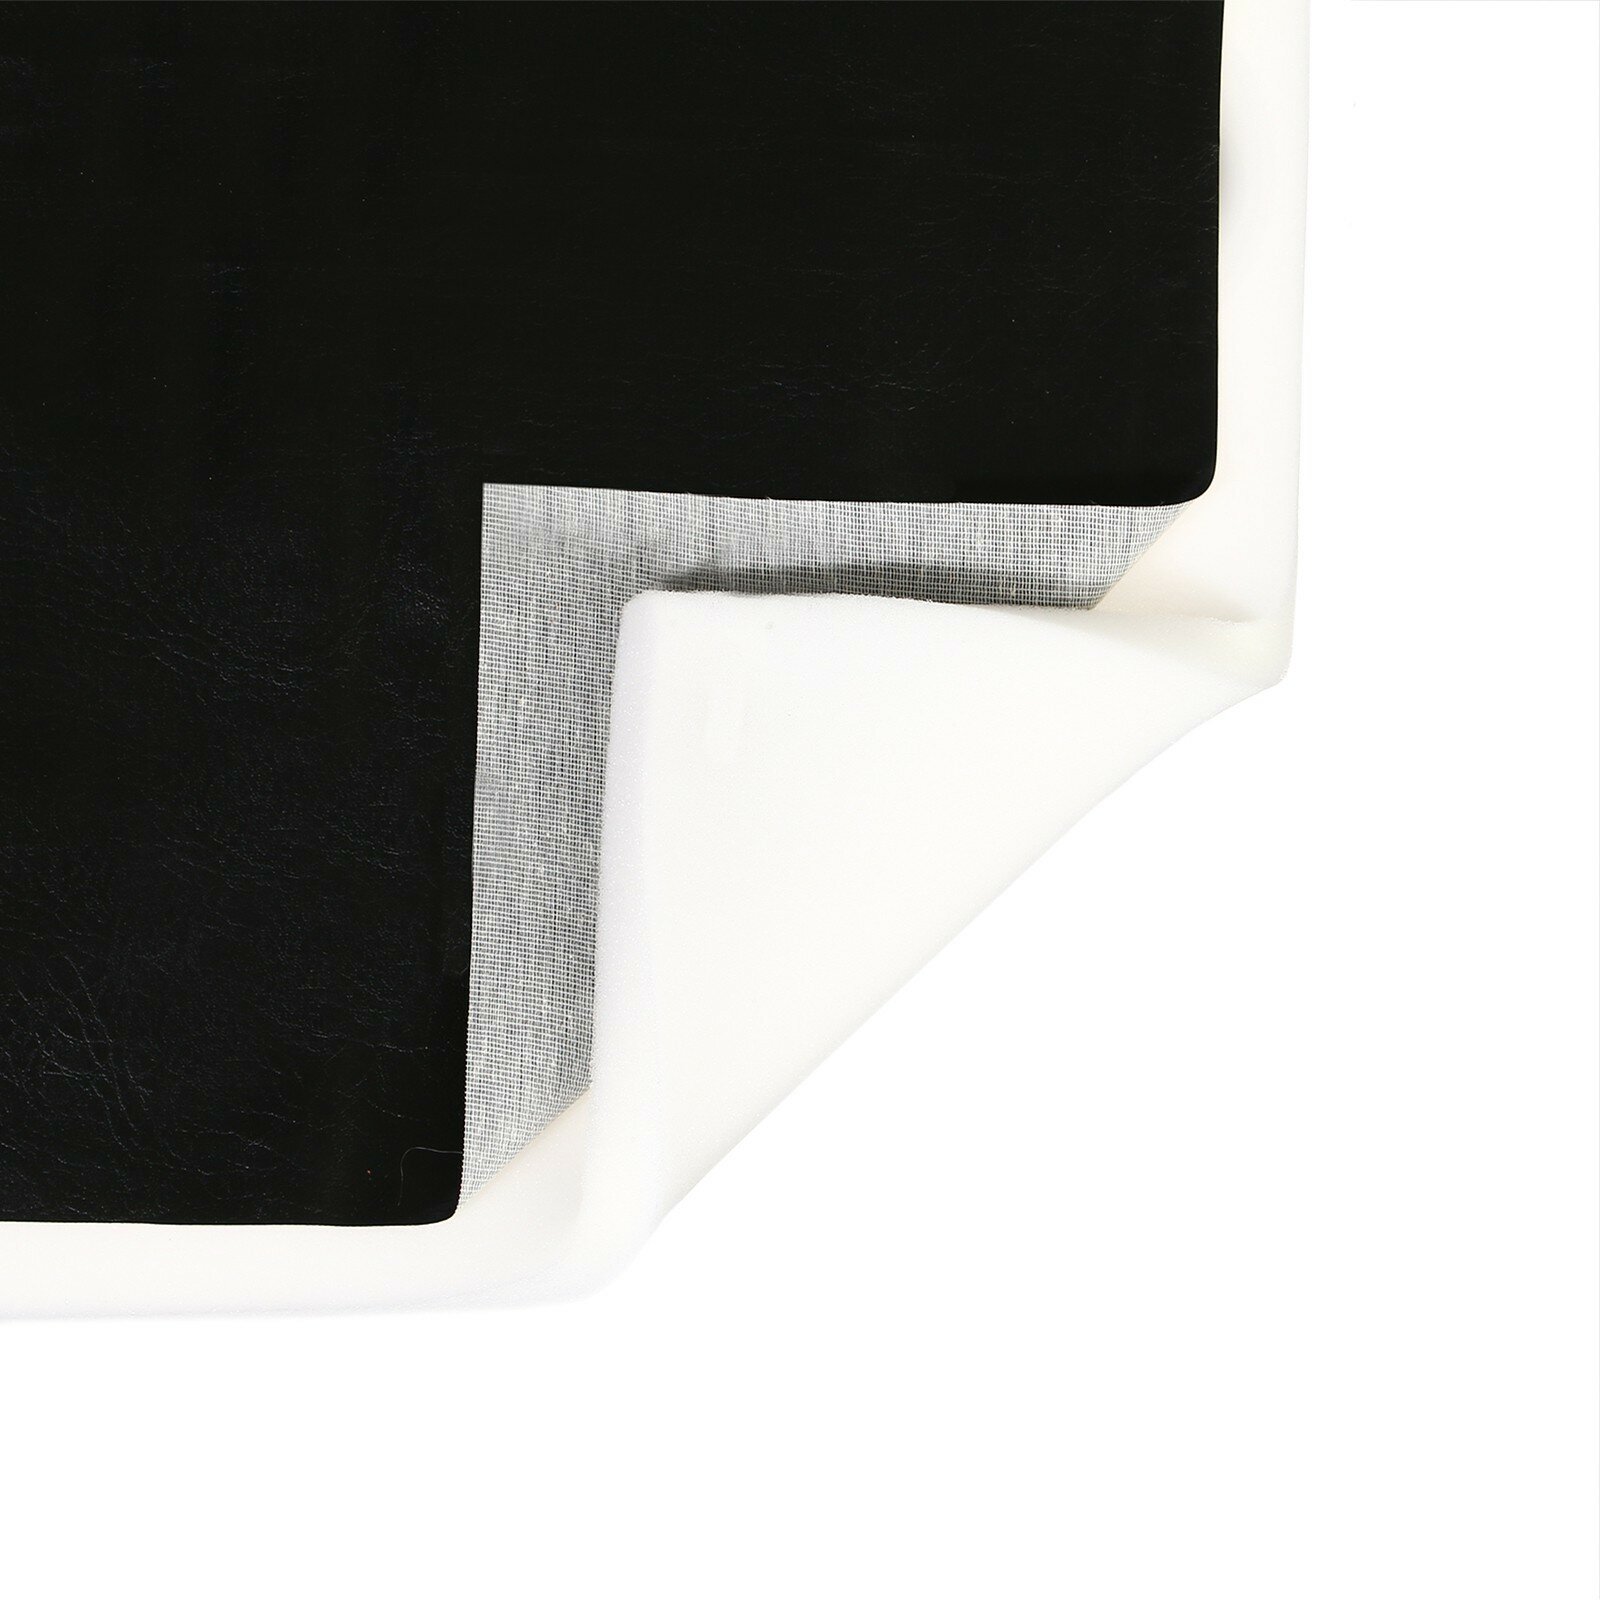 Комплект для перетяжки мебели, 50 × 100 см: иск. кожа, поролон 20 мм, чёрный (1шт.)